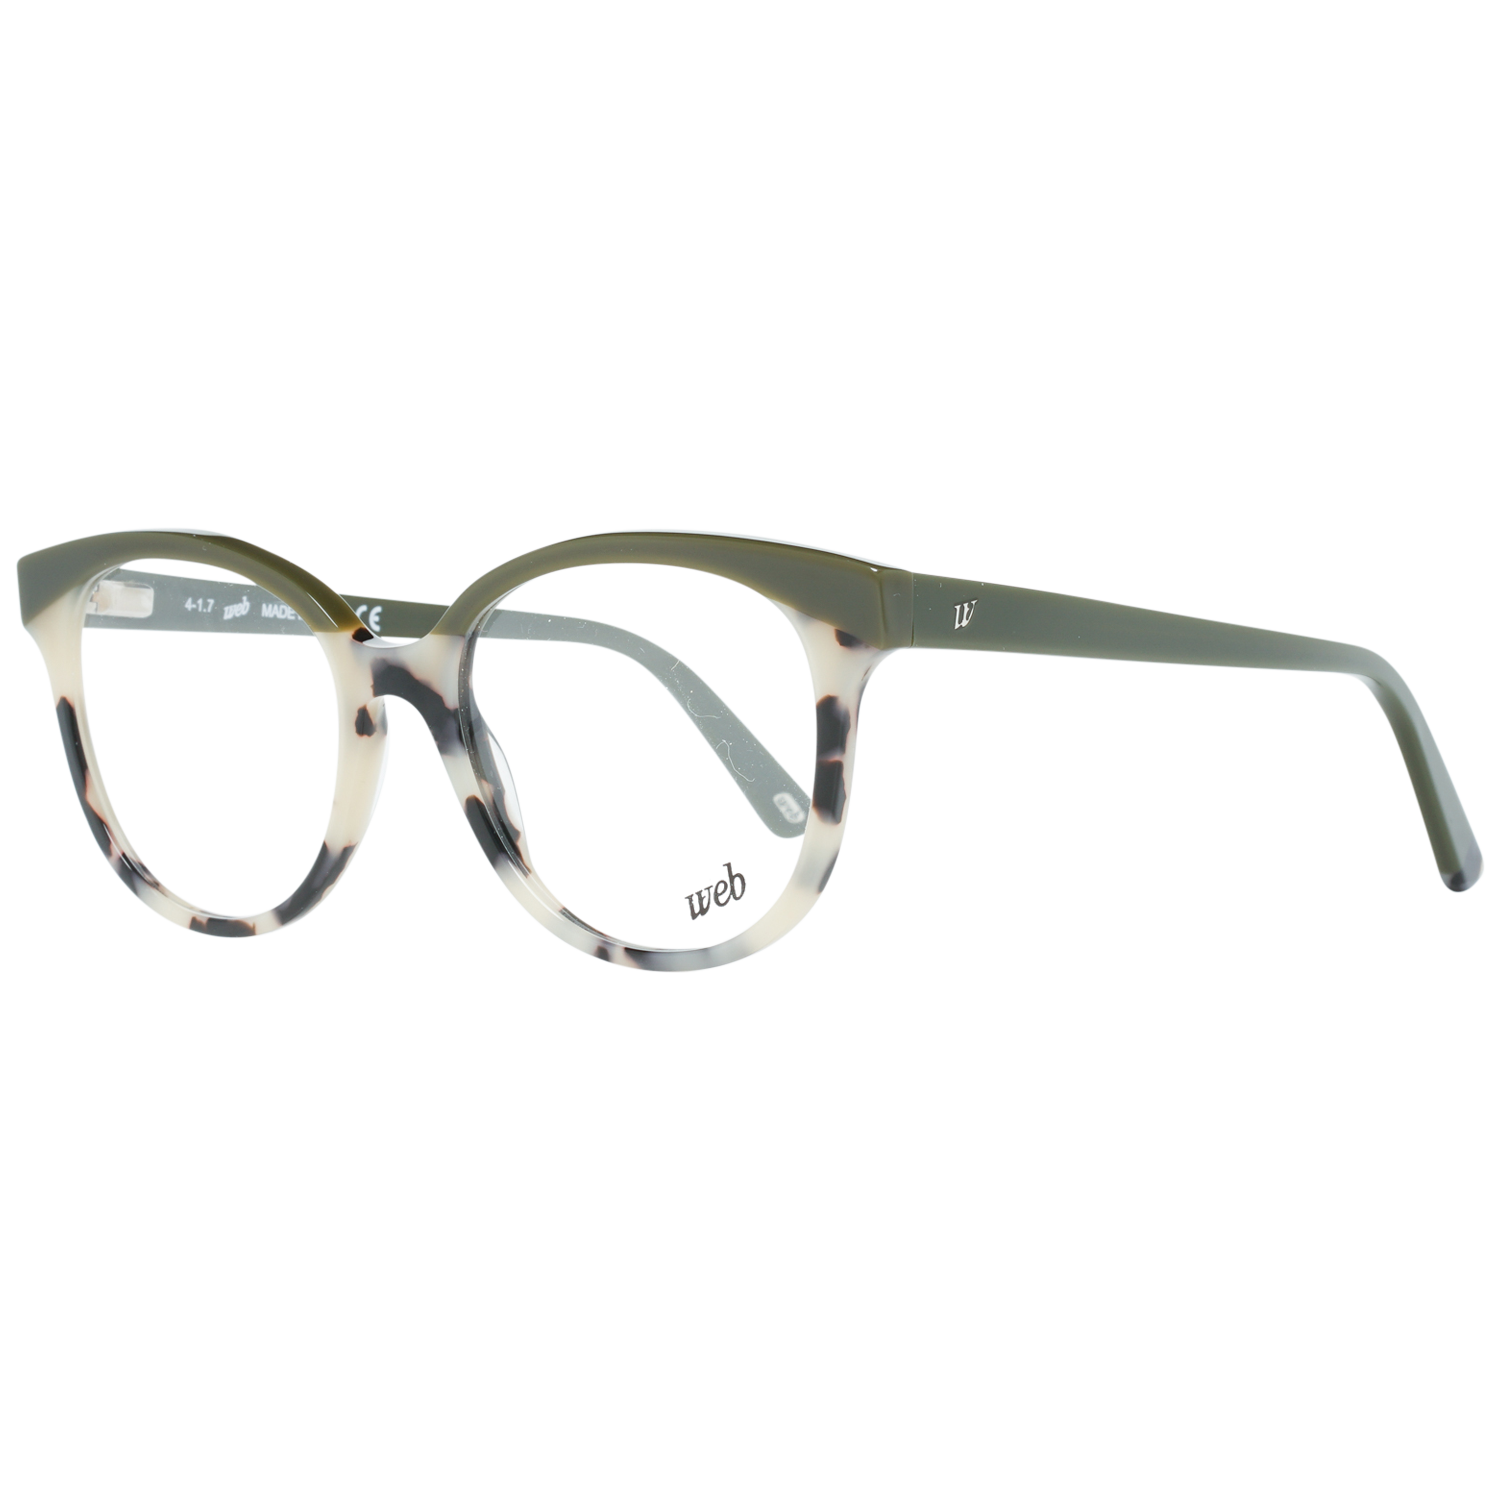 Web Frames Web Glasses Optical Frame WE5196 055 50 Eyeglasses Eyewear UK USA Australia 